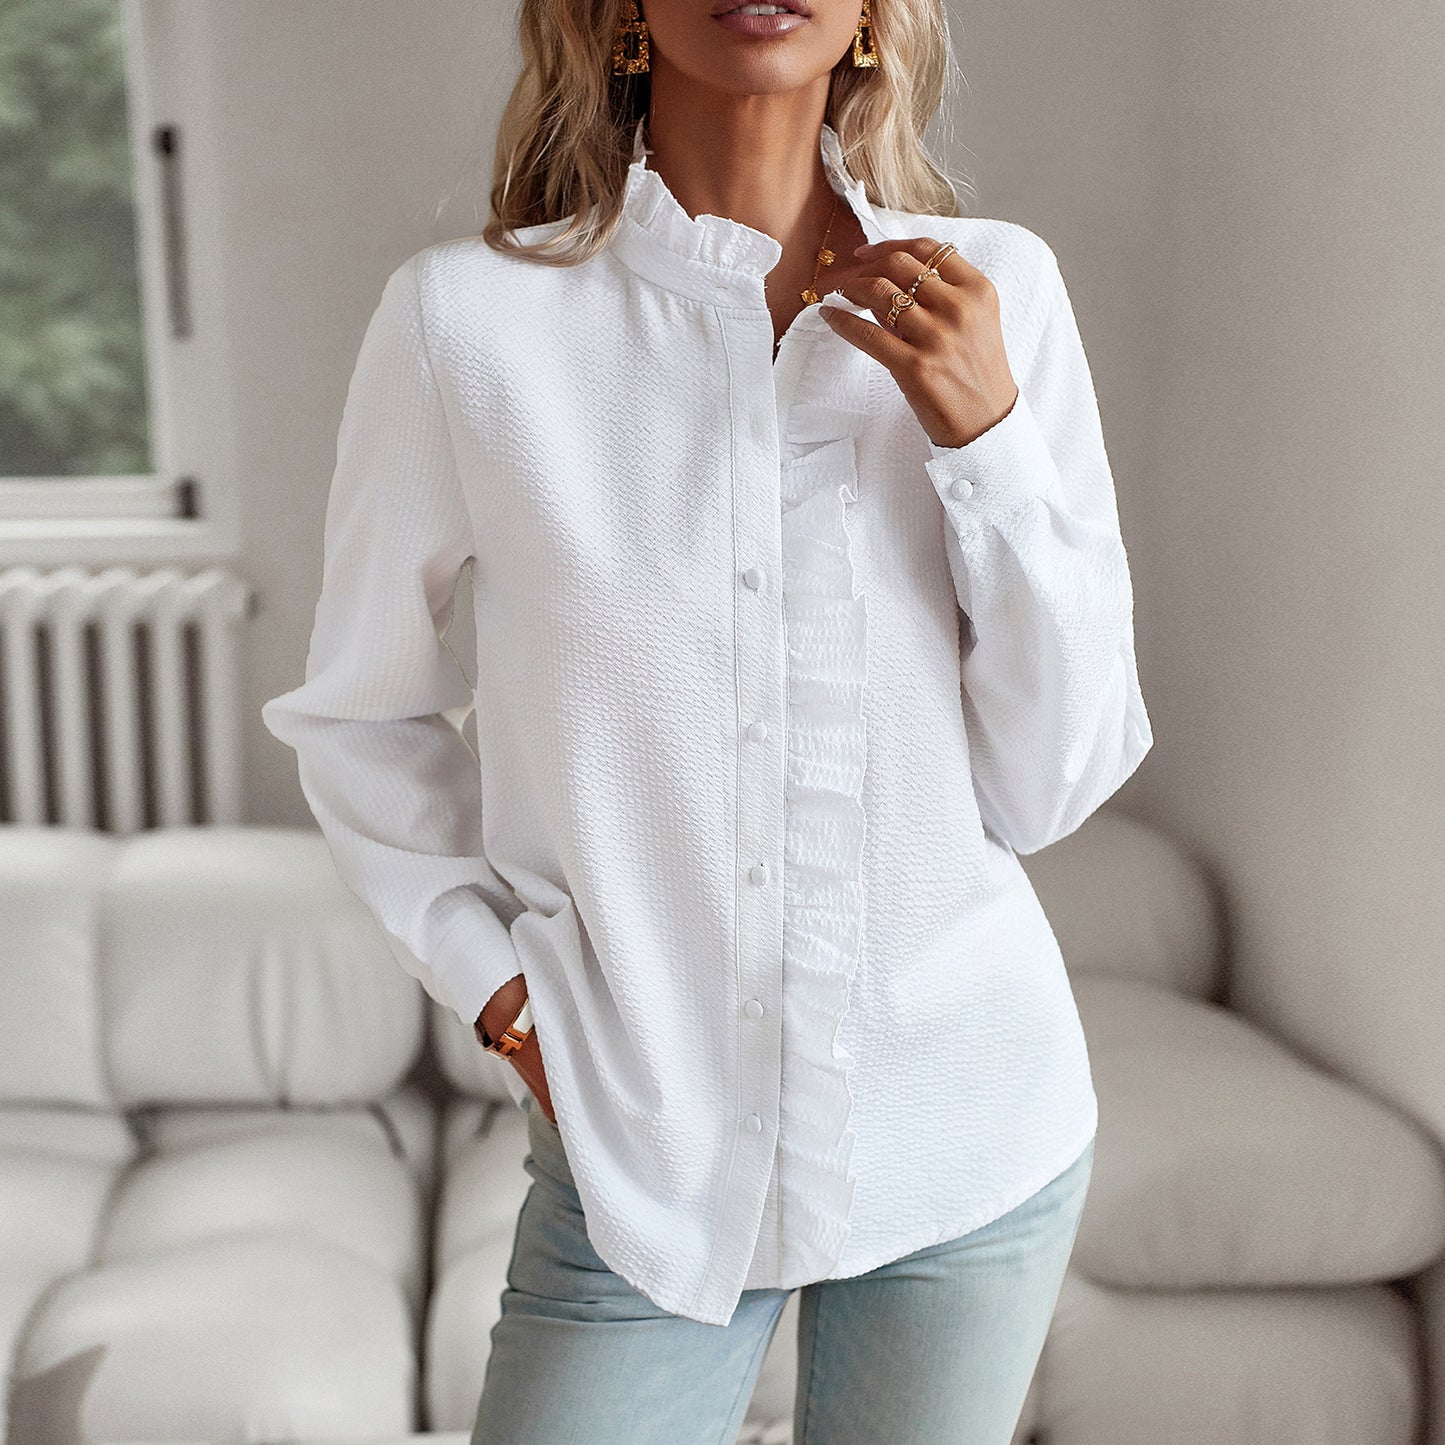 Long Sleeved Shirt Women Autumn Winter Office Top Button